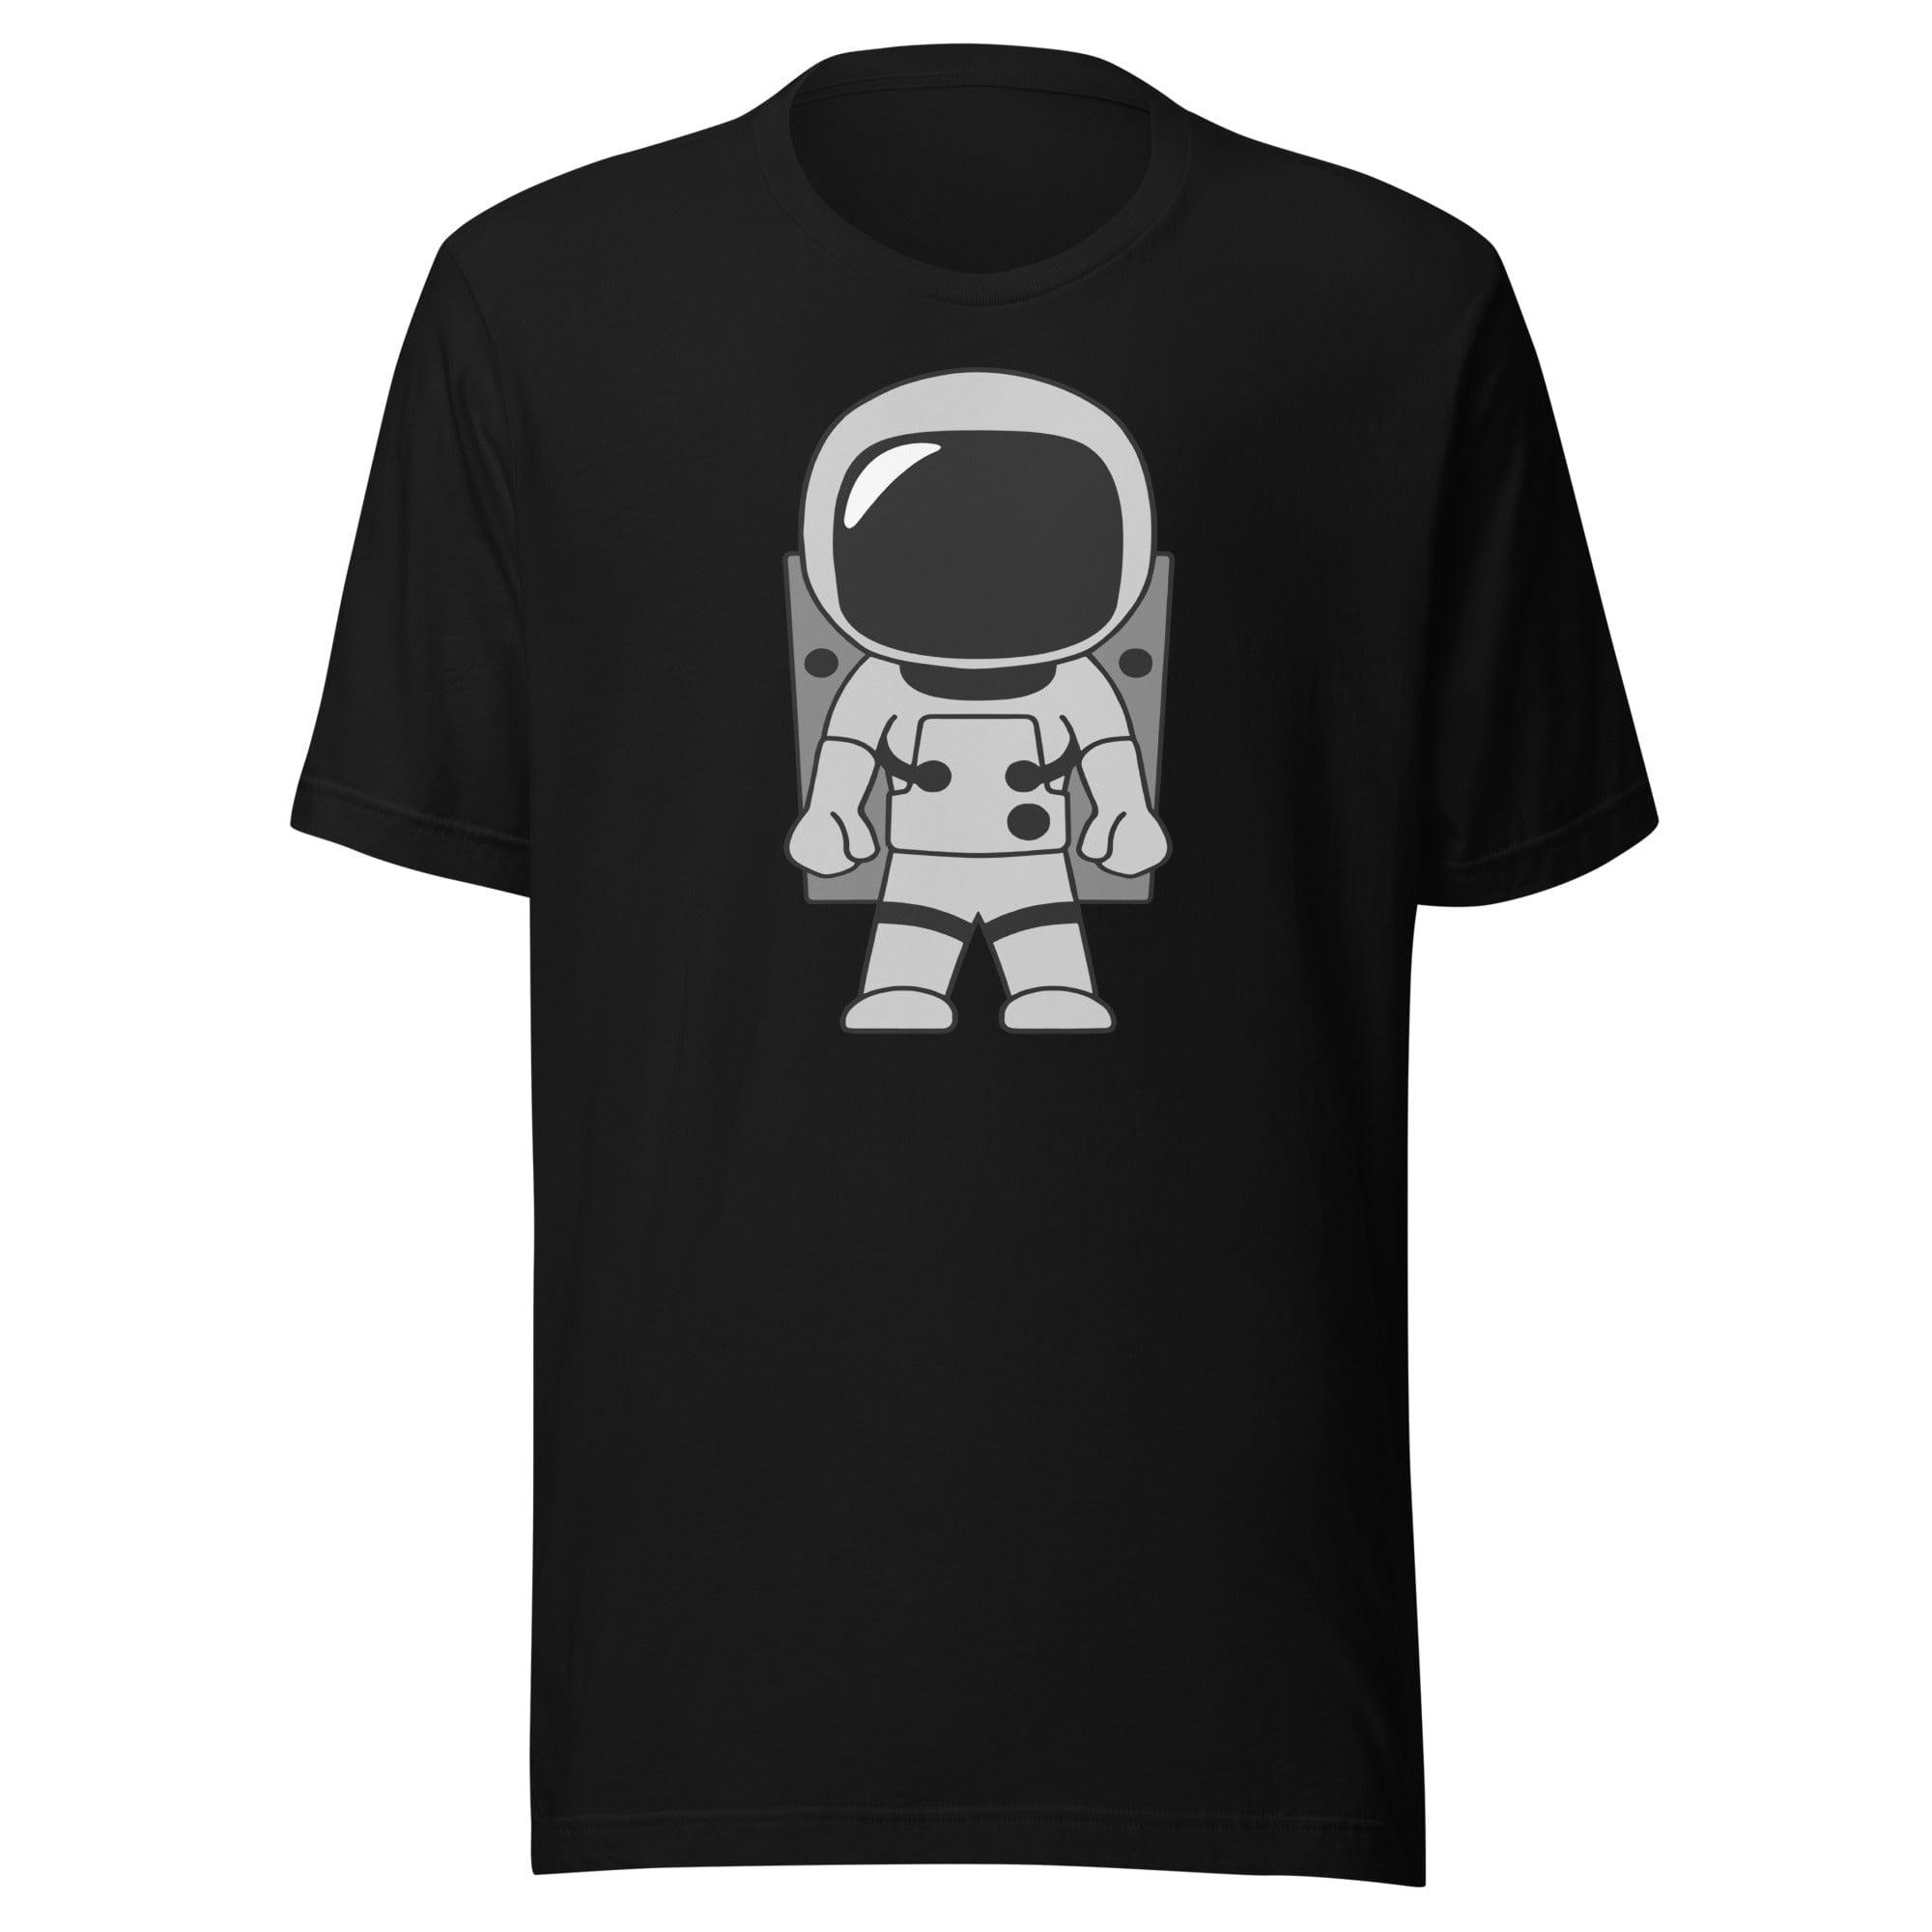 NASA Unisex Short Sleeve T-shirt Astronaut in Space Suit - TopKoalaTee